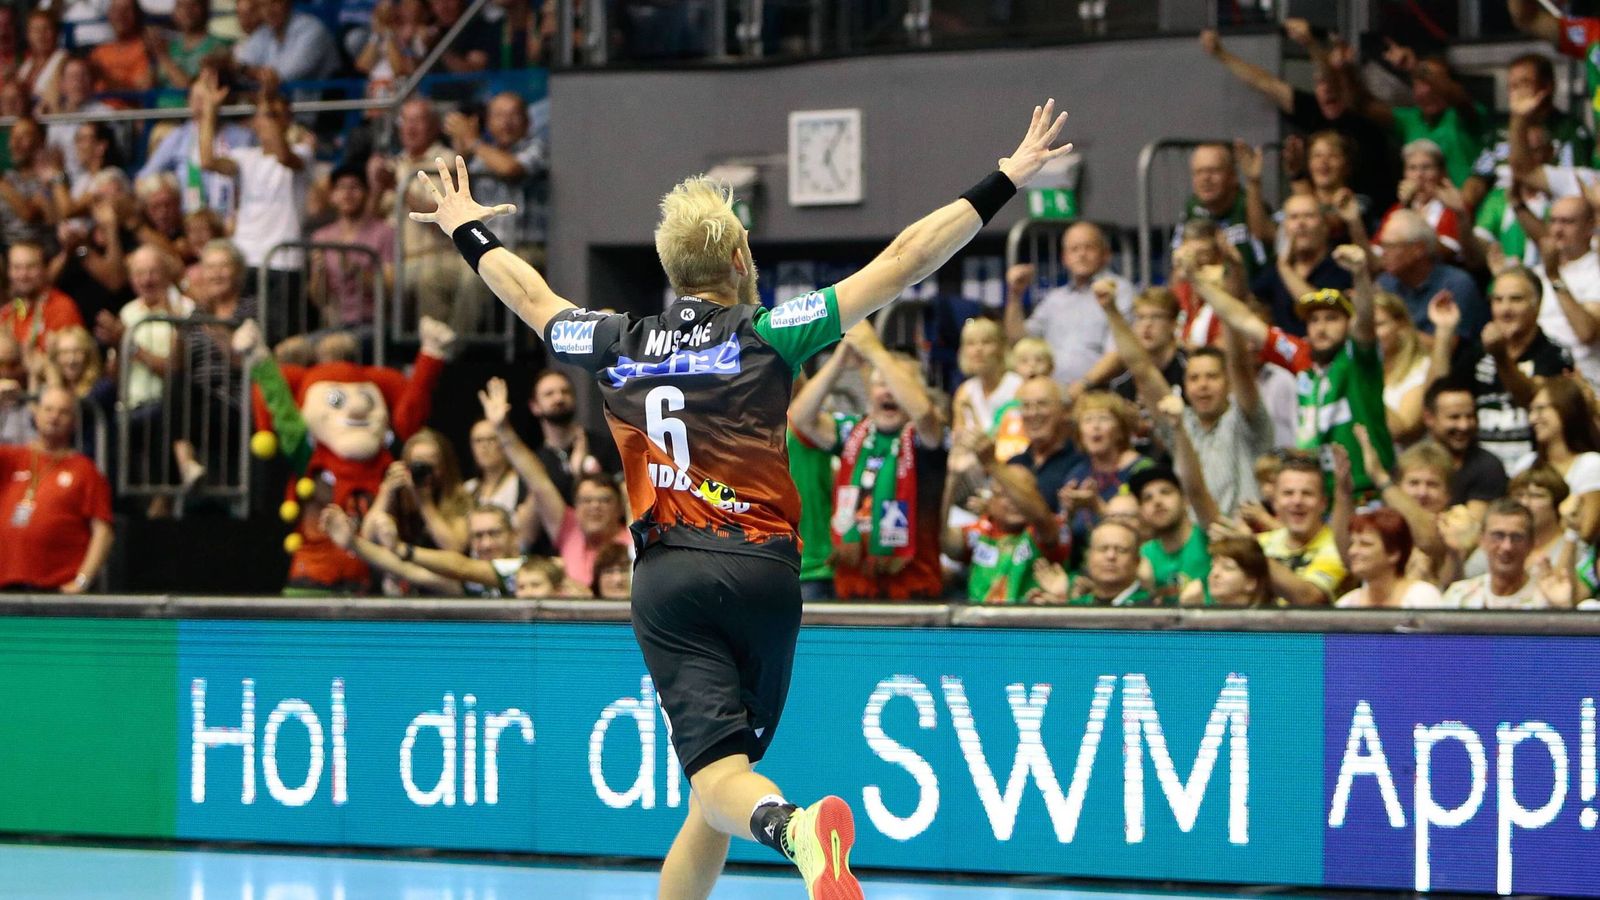 Torjäger Musche will mit Magdeburg die Meisterschaft holen Handball News Sky Sport